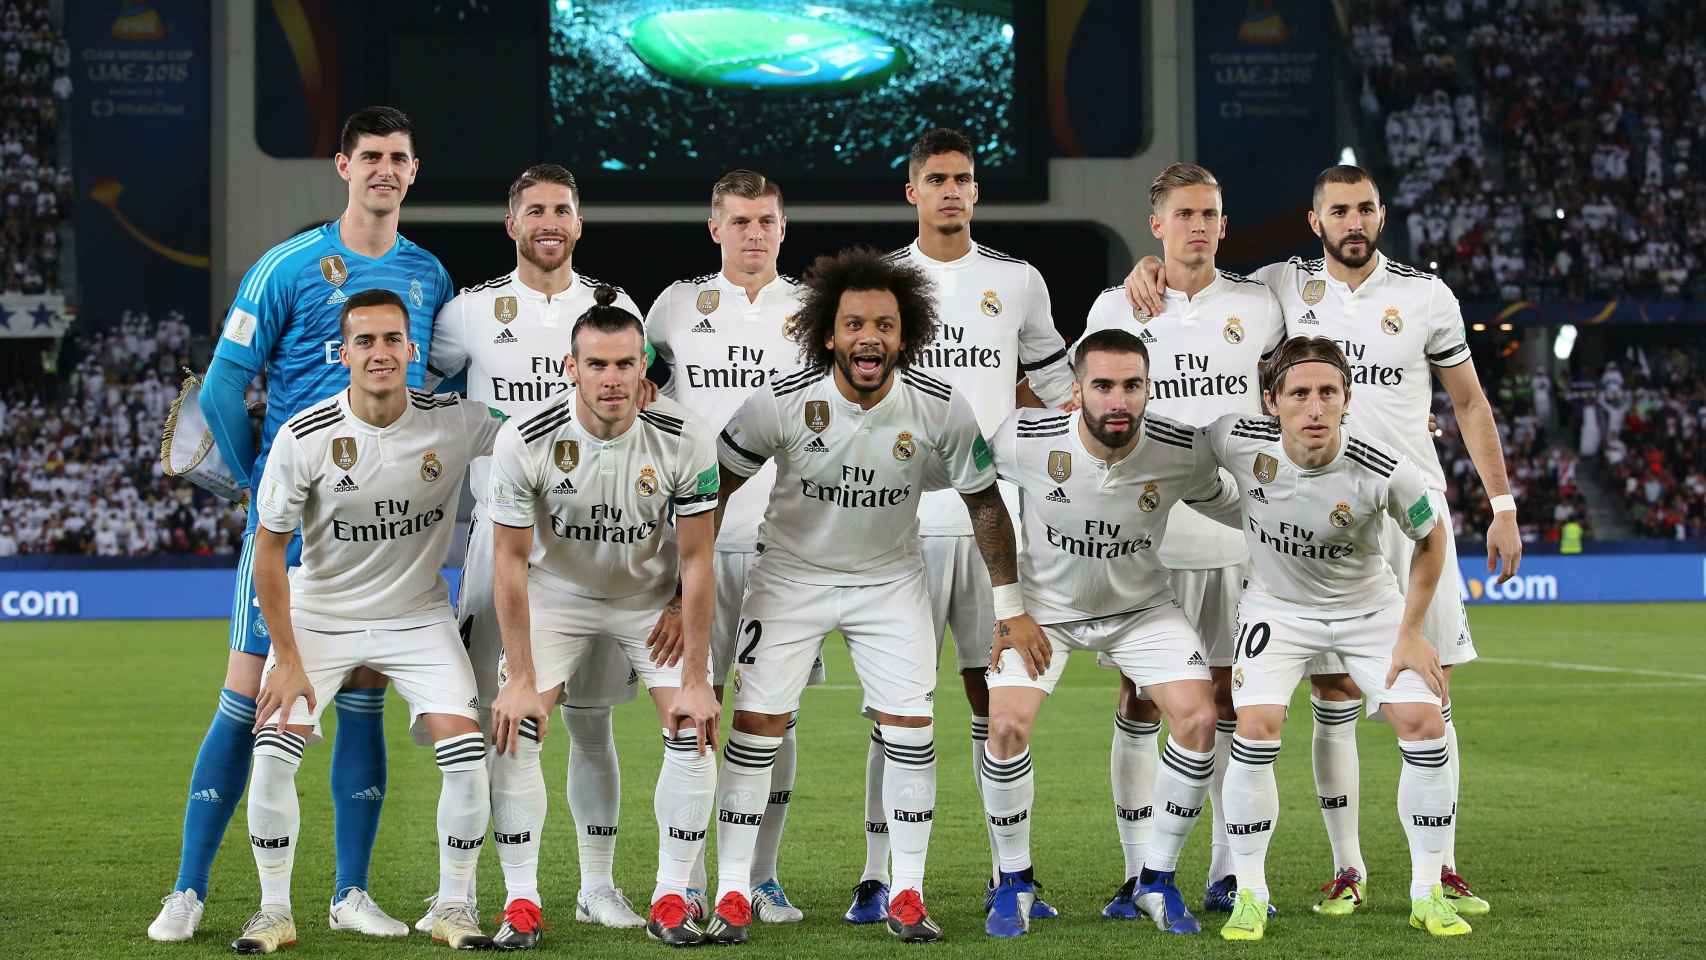 Los once titulares del Real Madrid en la final del Mundial de Clubes 2018